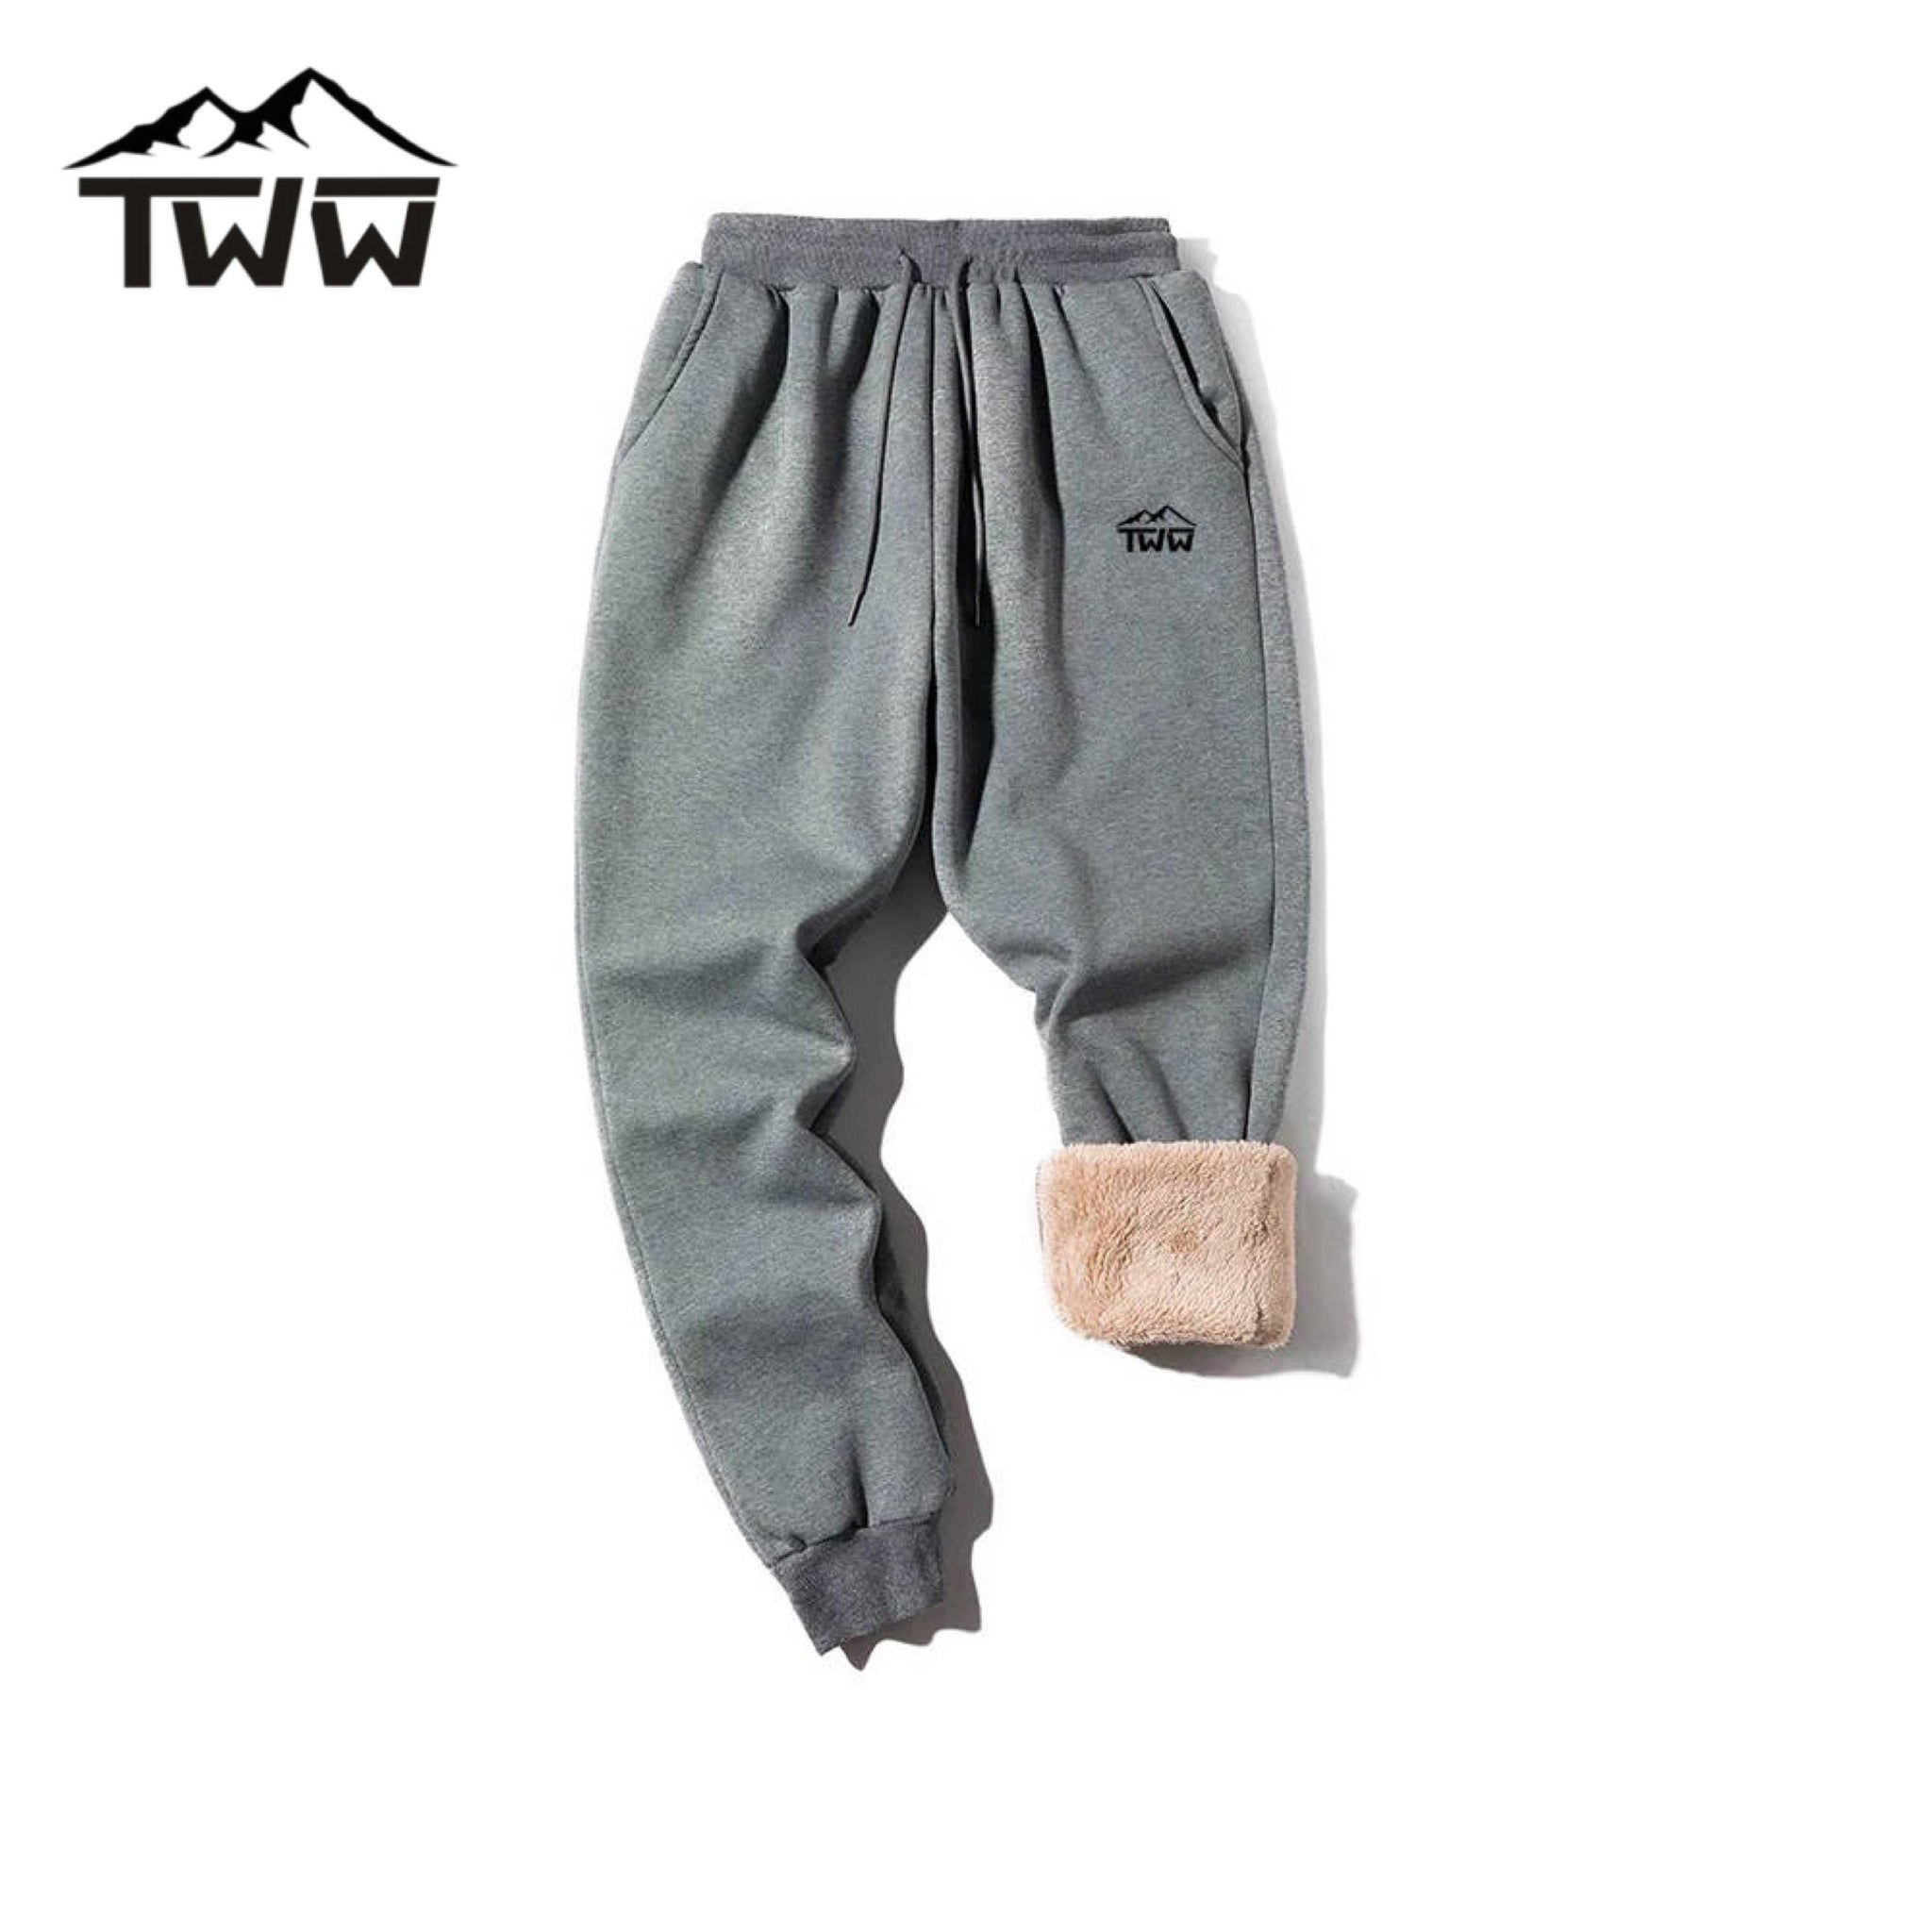 TWW- WoolLuxe Unisex Sweatpants